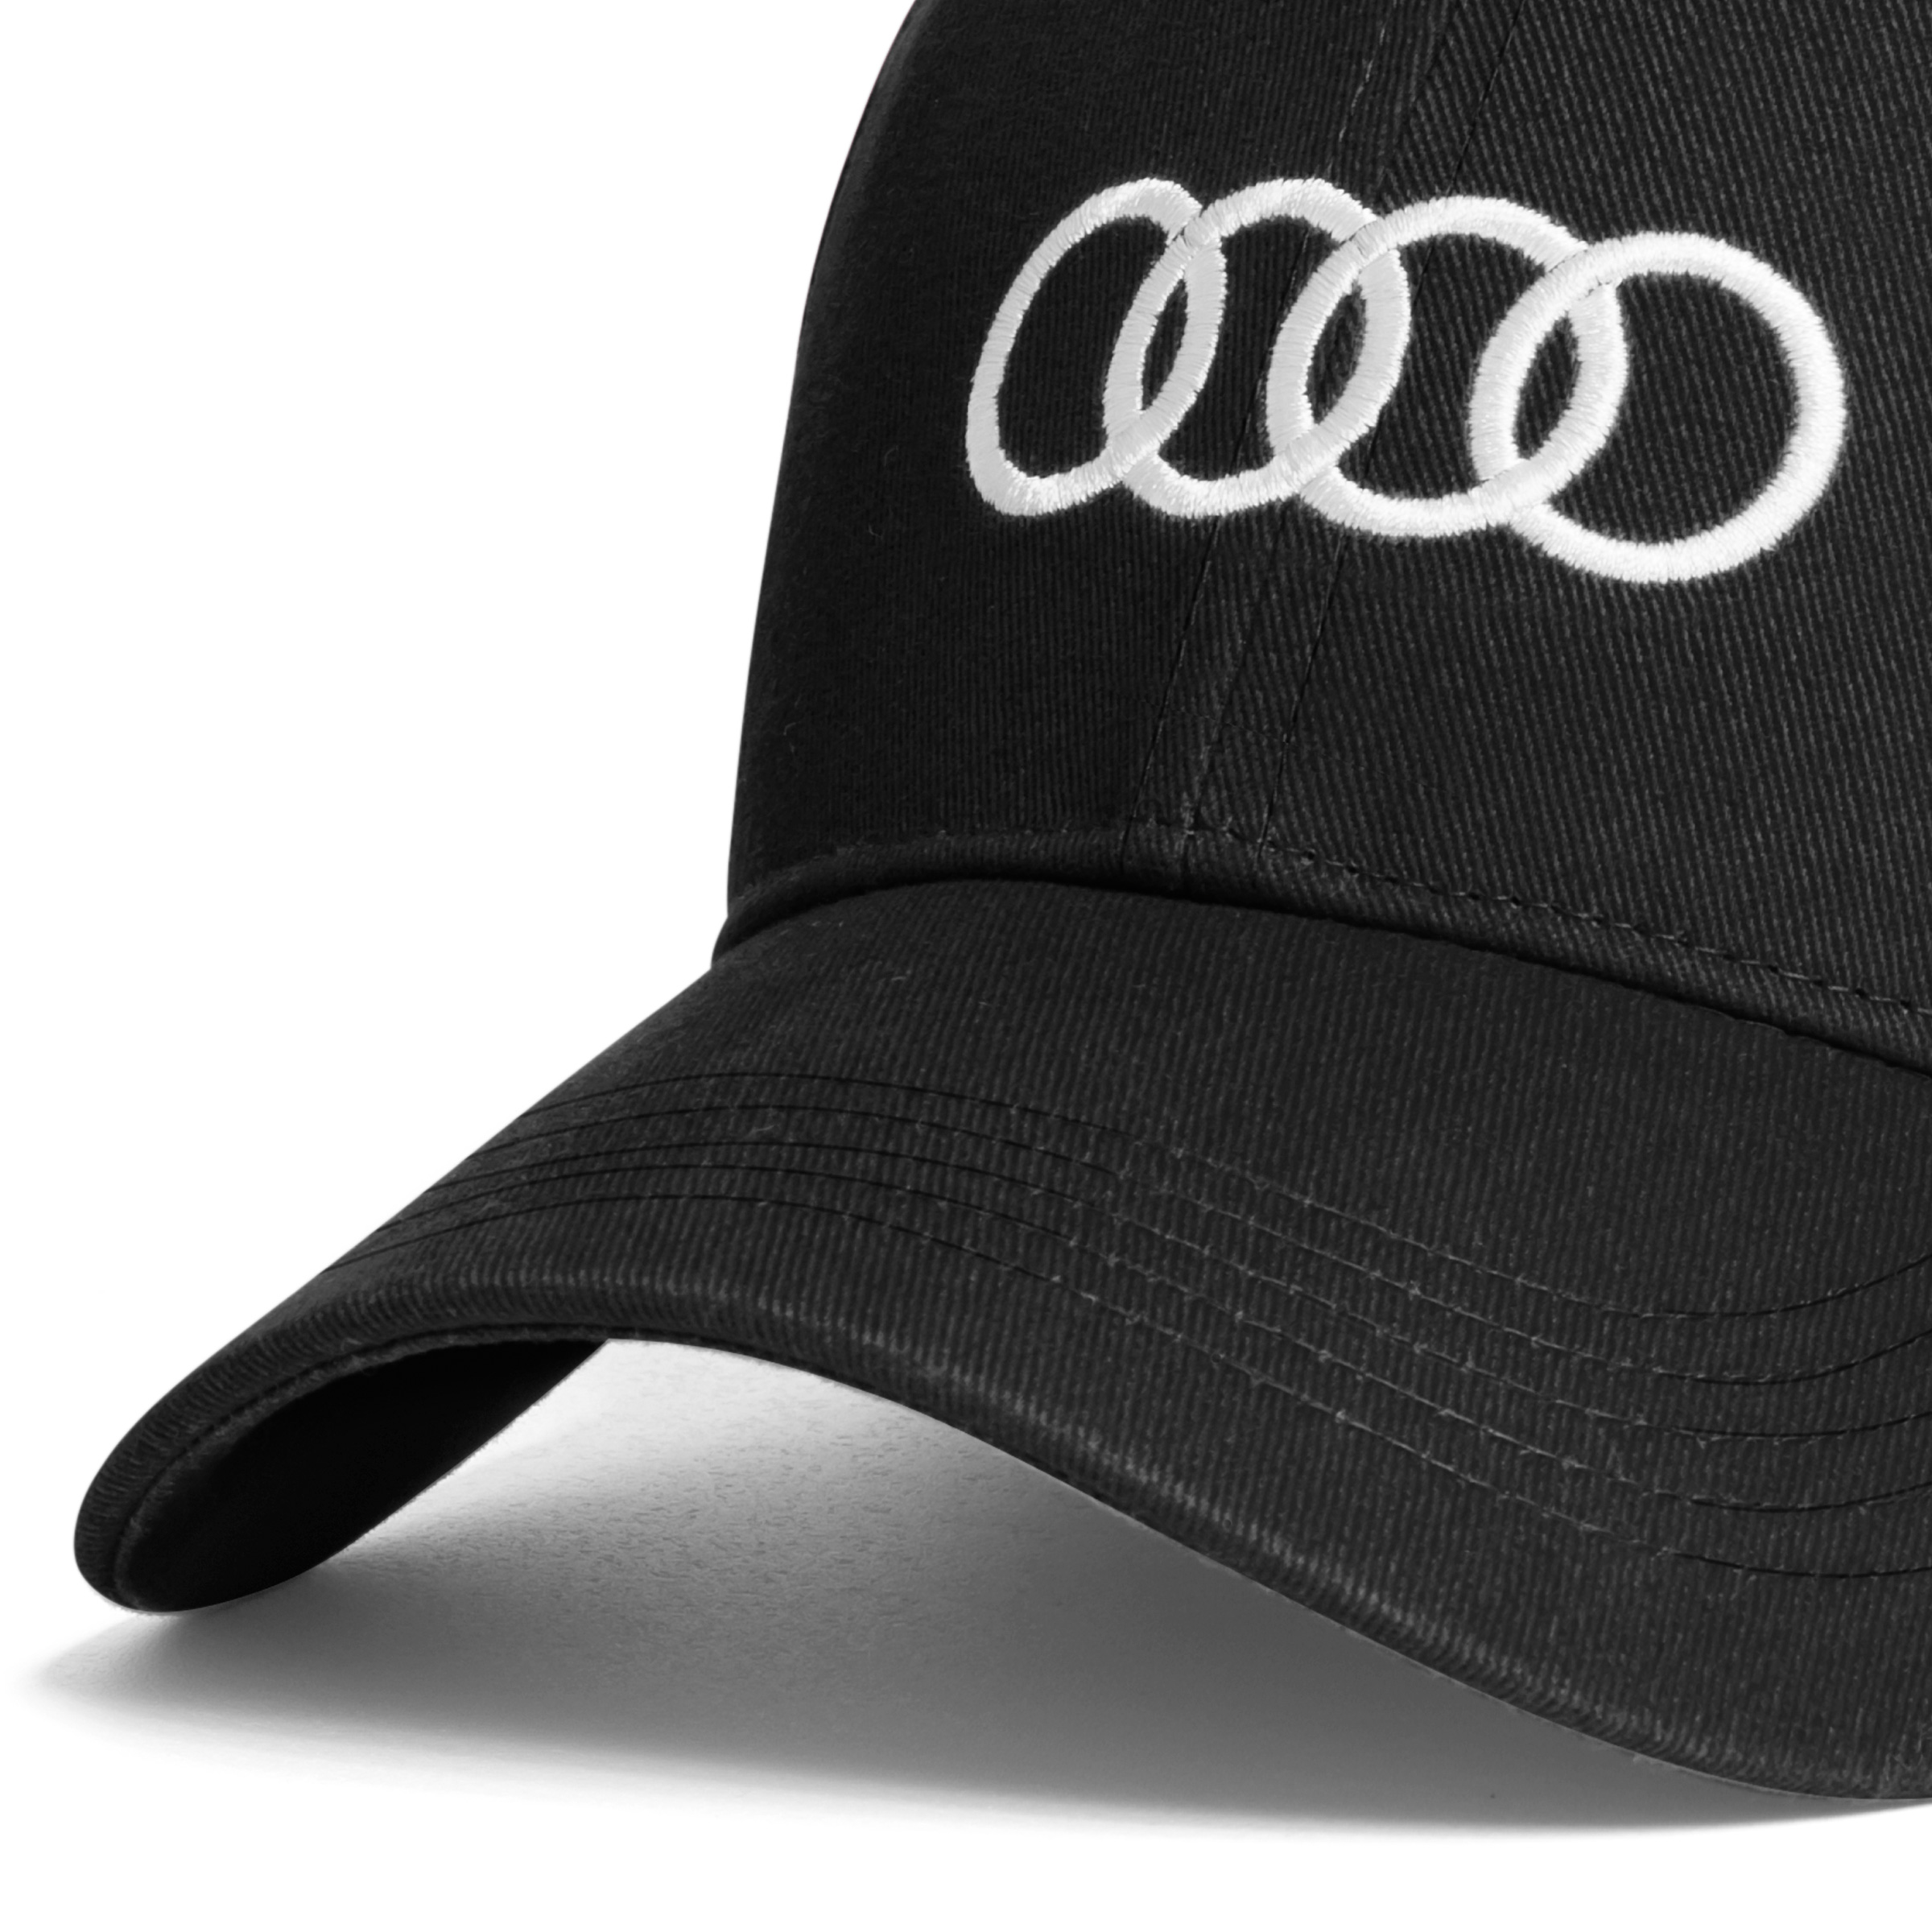 Audi Cap, schwarz